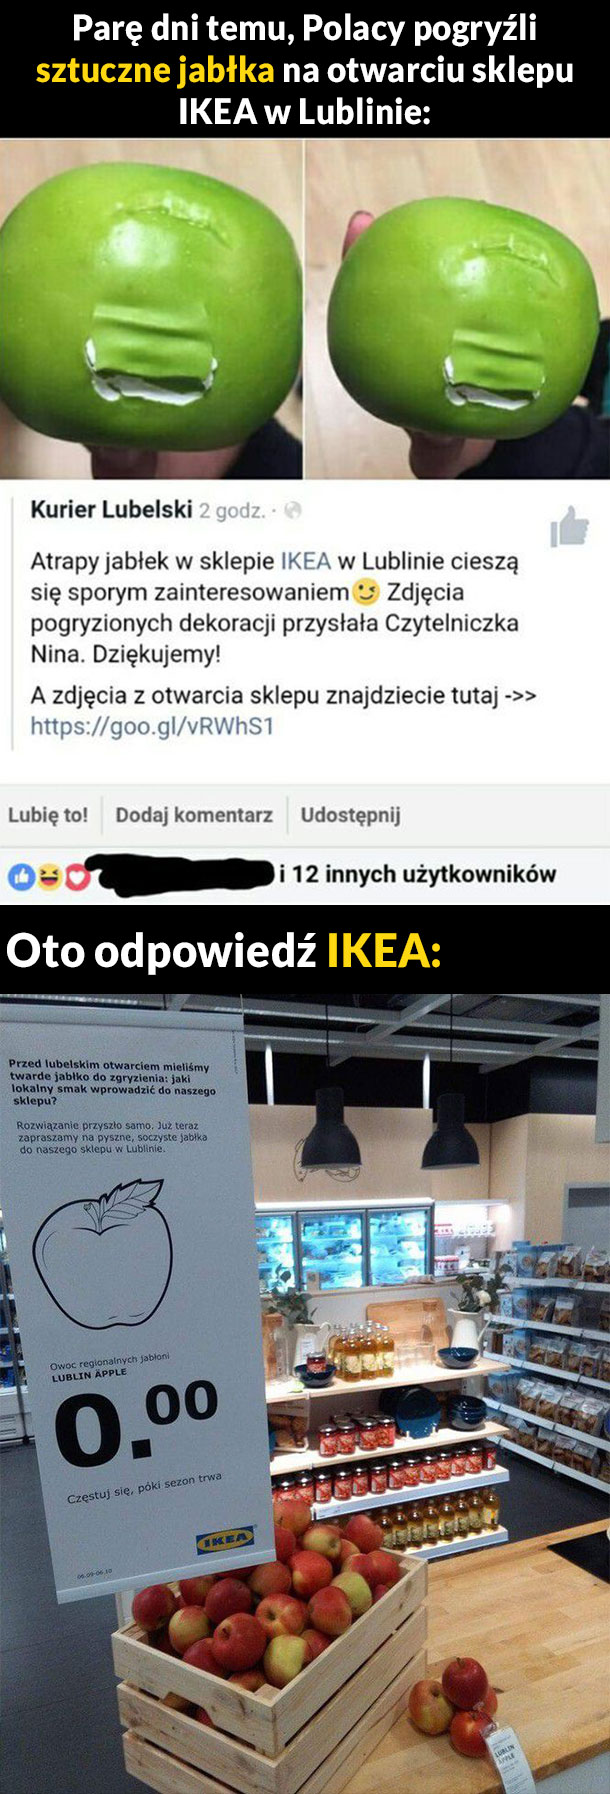 Odpowiedź IKEA 